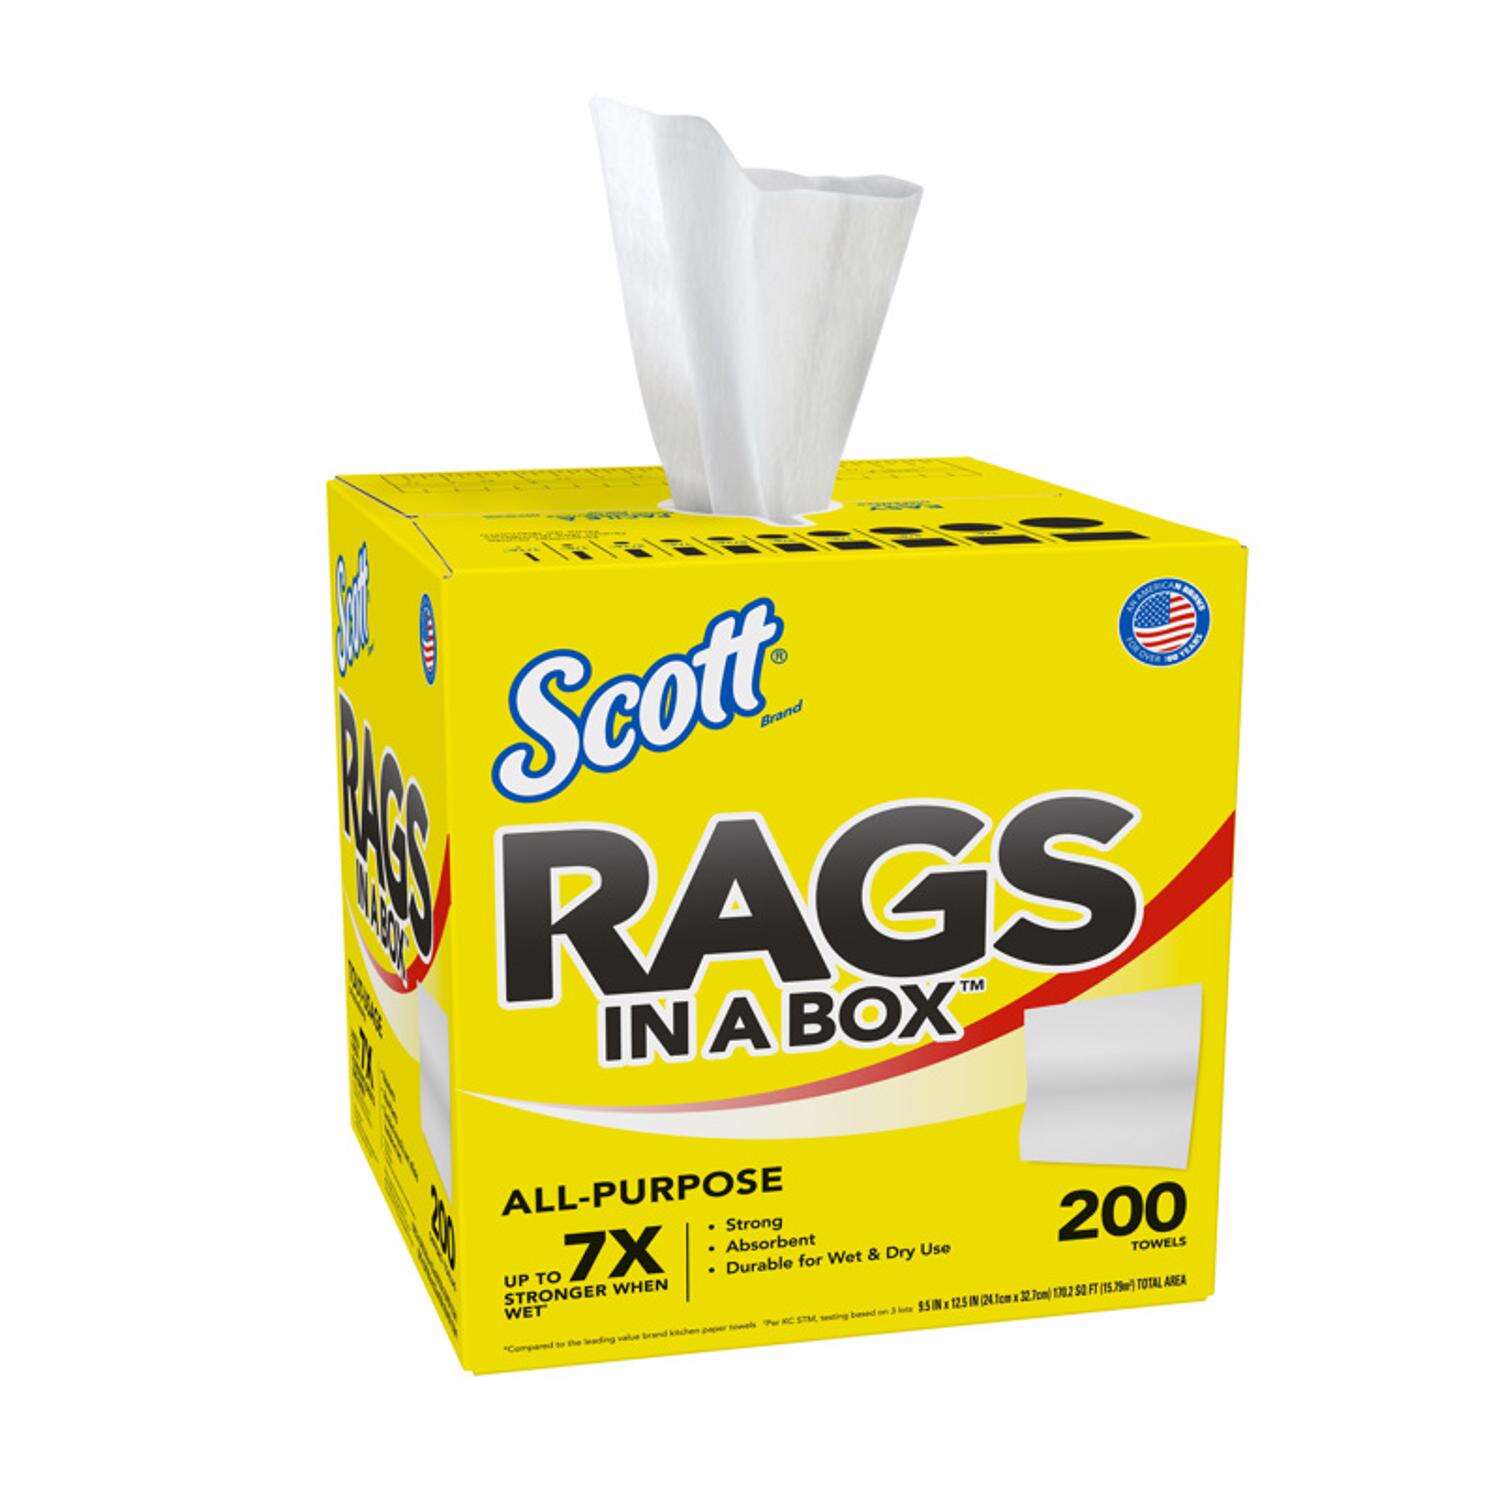 Scott Rags in a Box